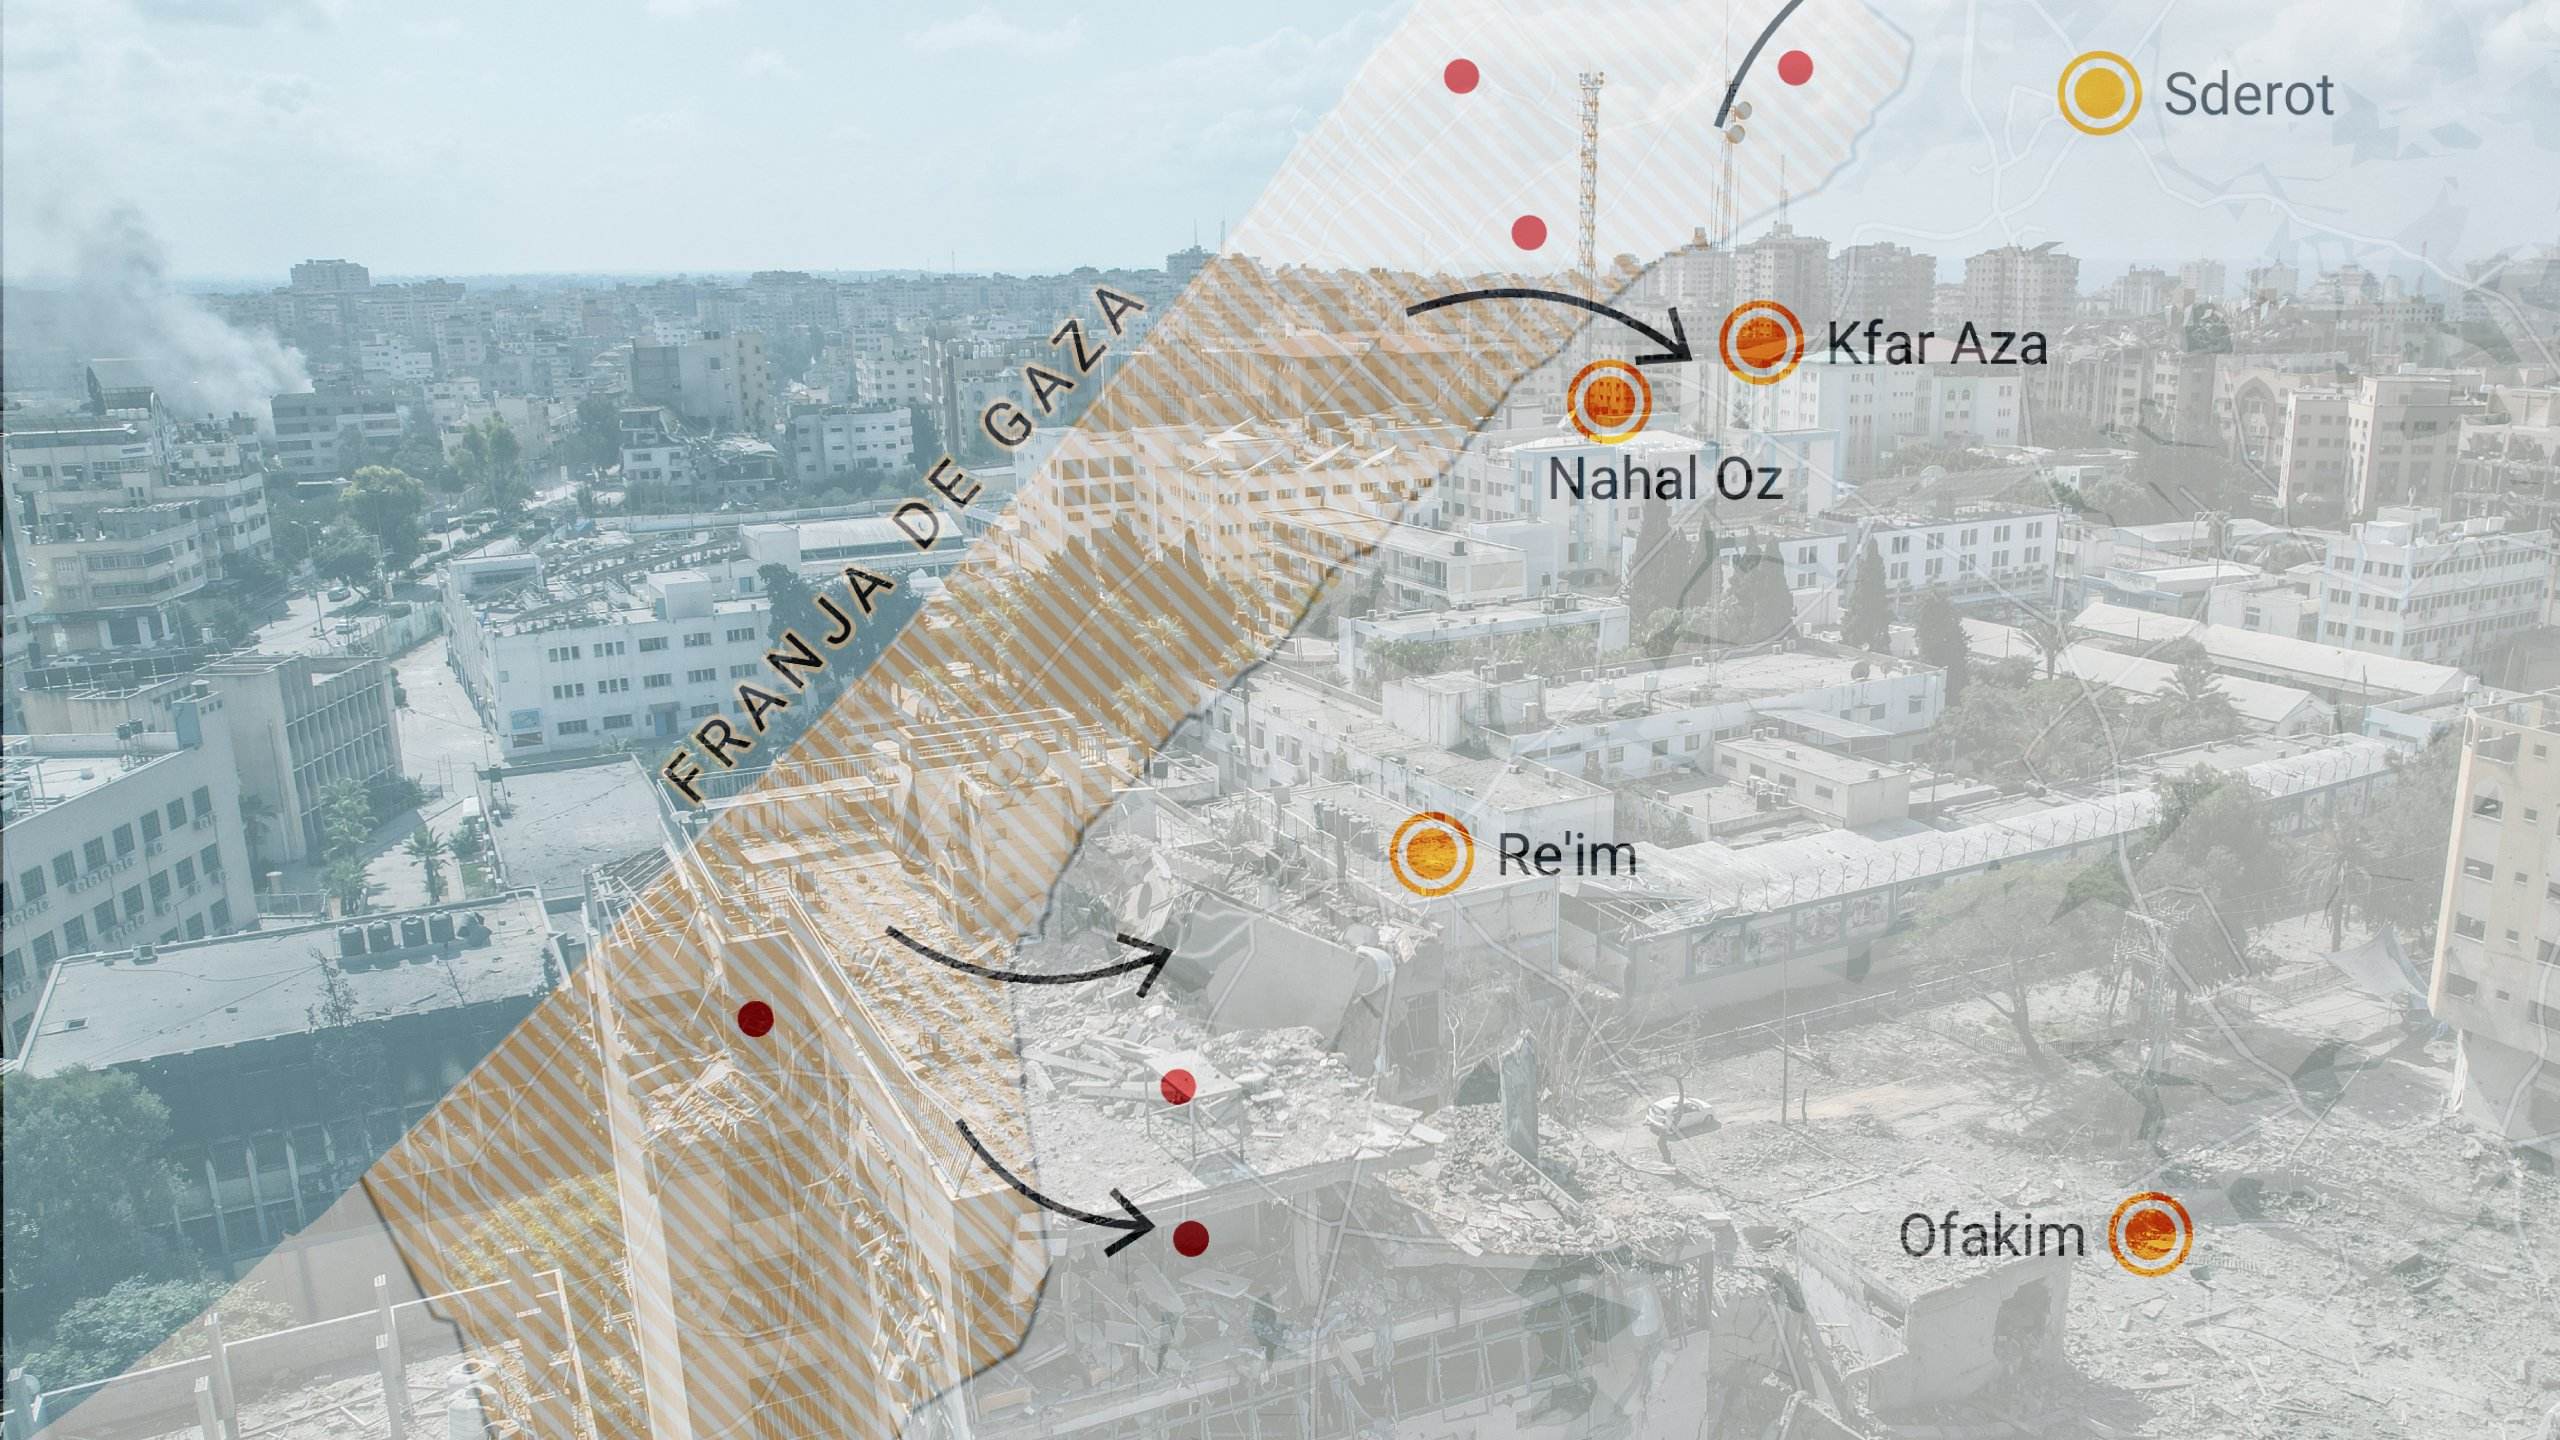 Les claus del conflicte a Israel i Palestina: 7 mapes per entendre què està passant